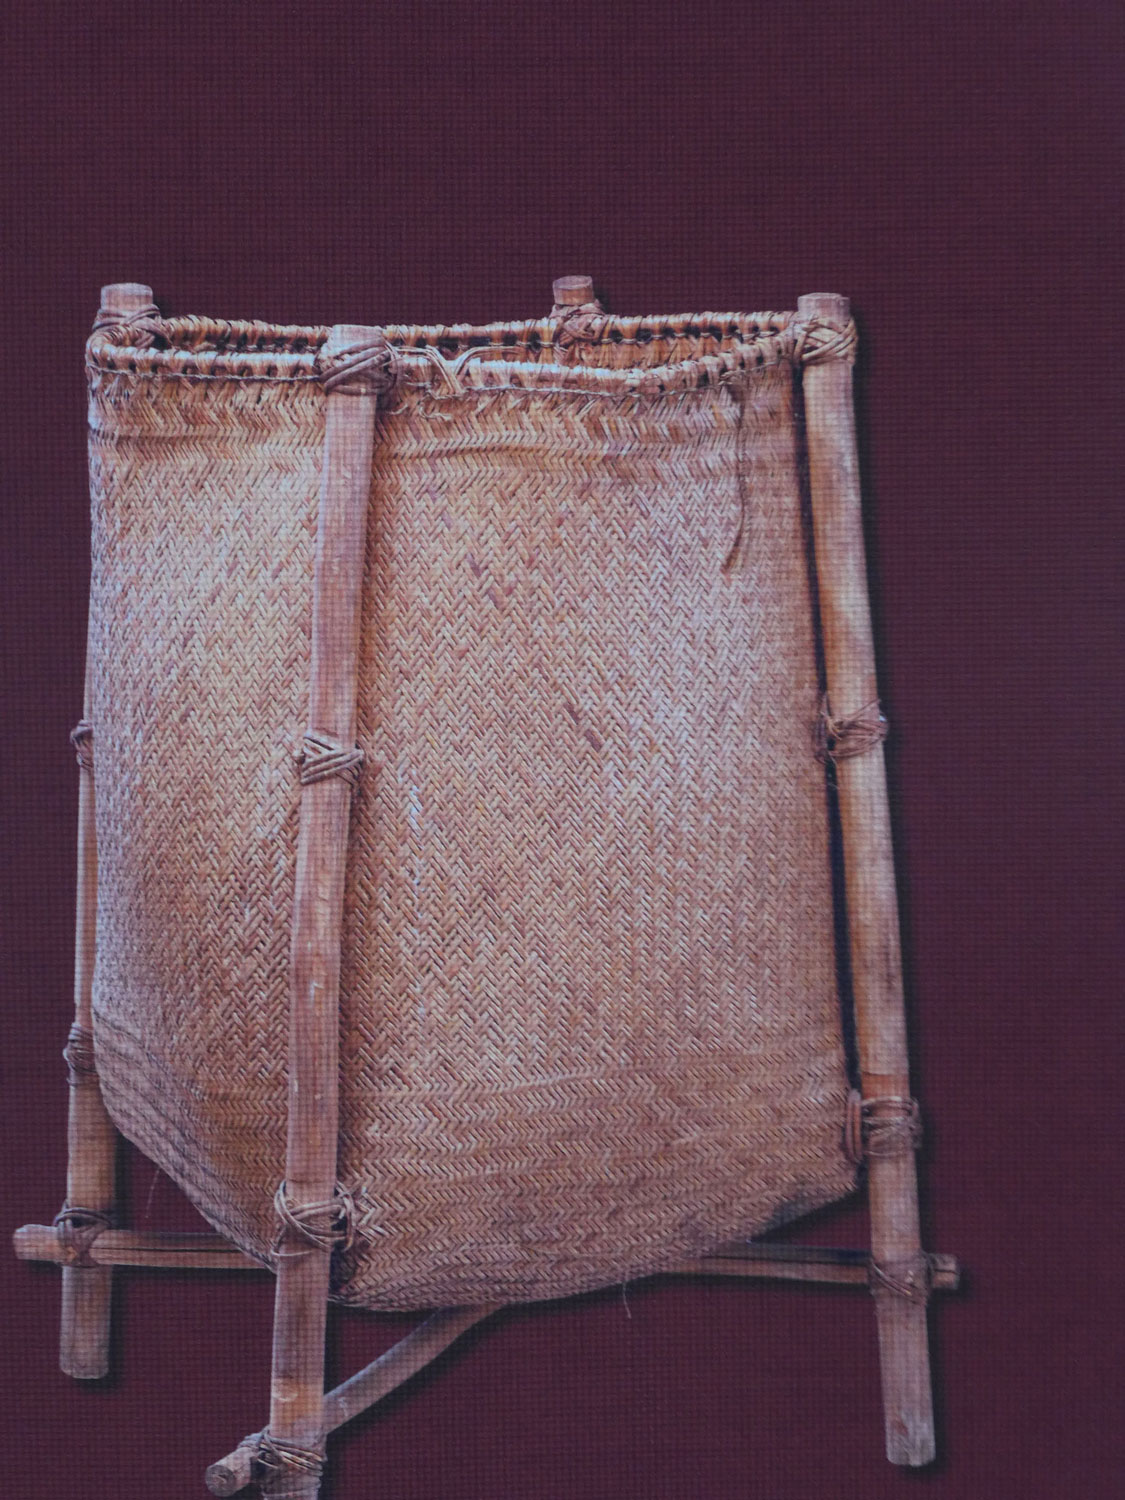 Sac contenant les objets rituels du maraké.